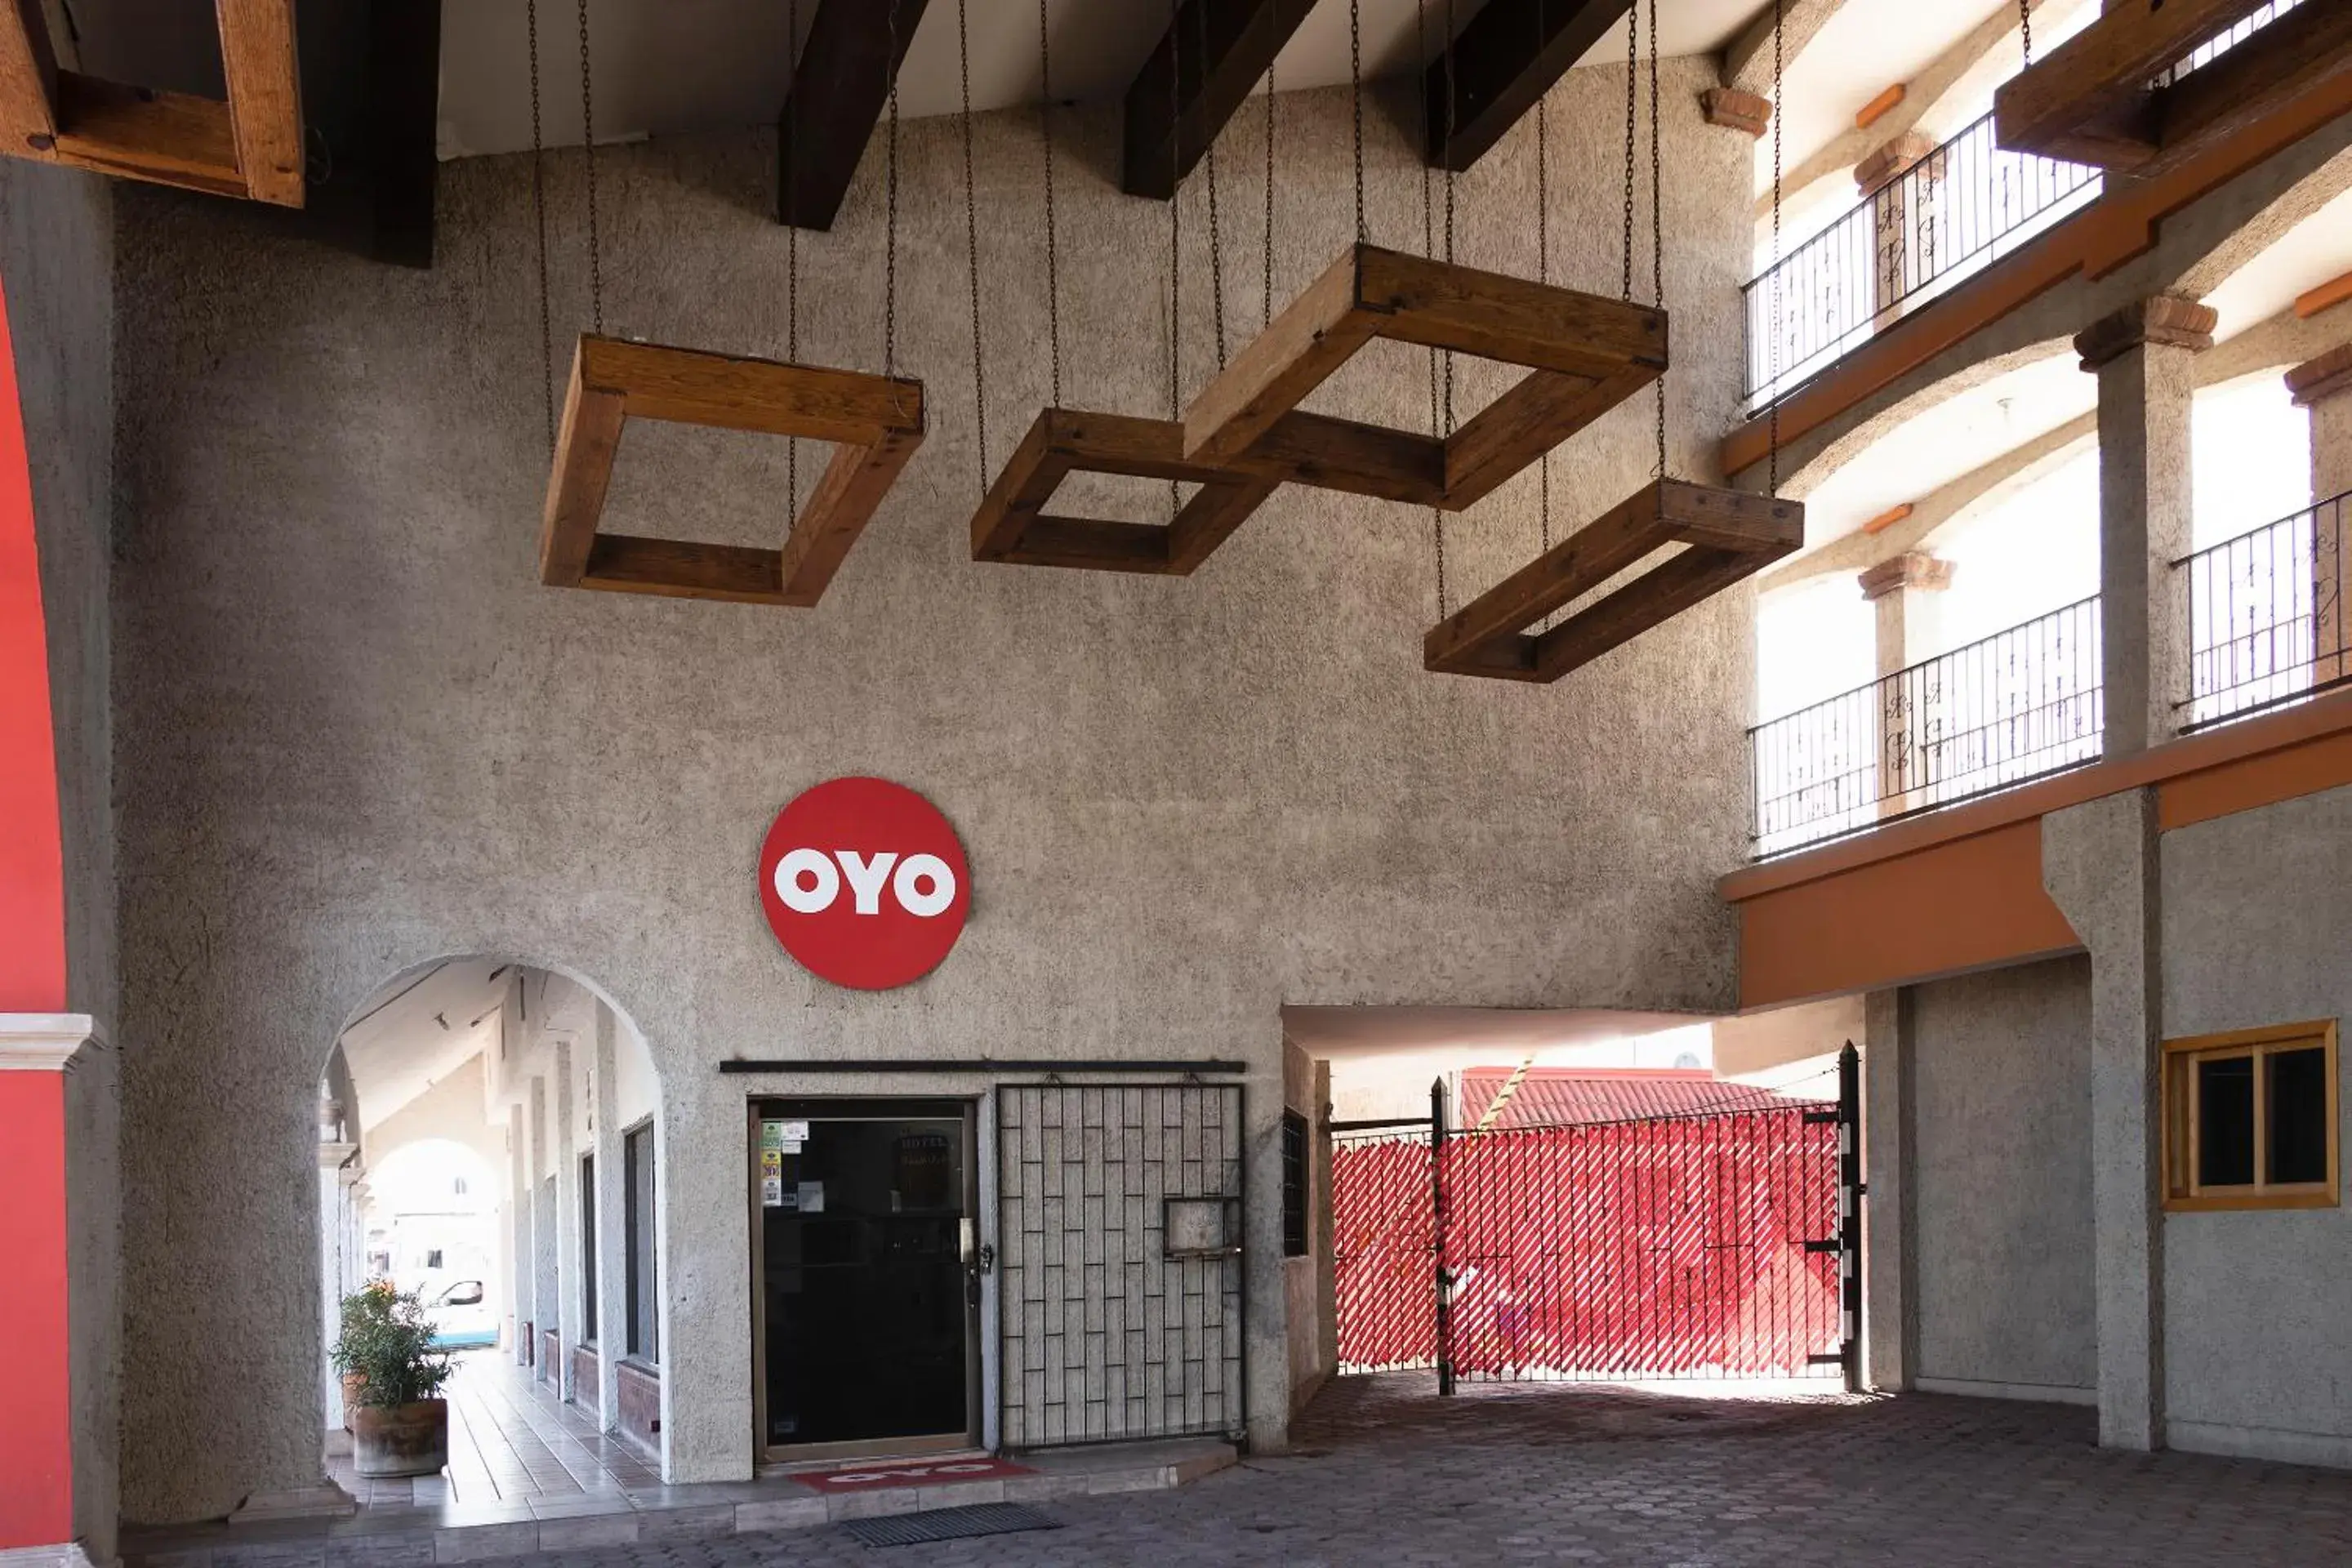 Facade/entrance in OYO Hotel Real Del Sur, Estadio Chihuahua